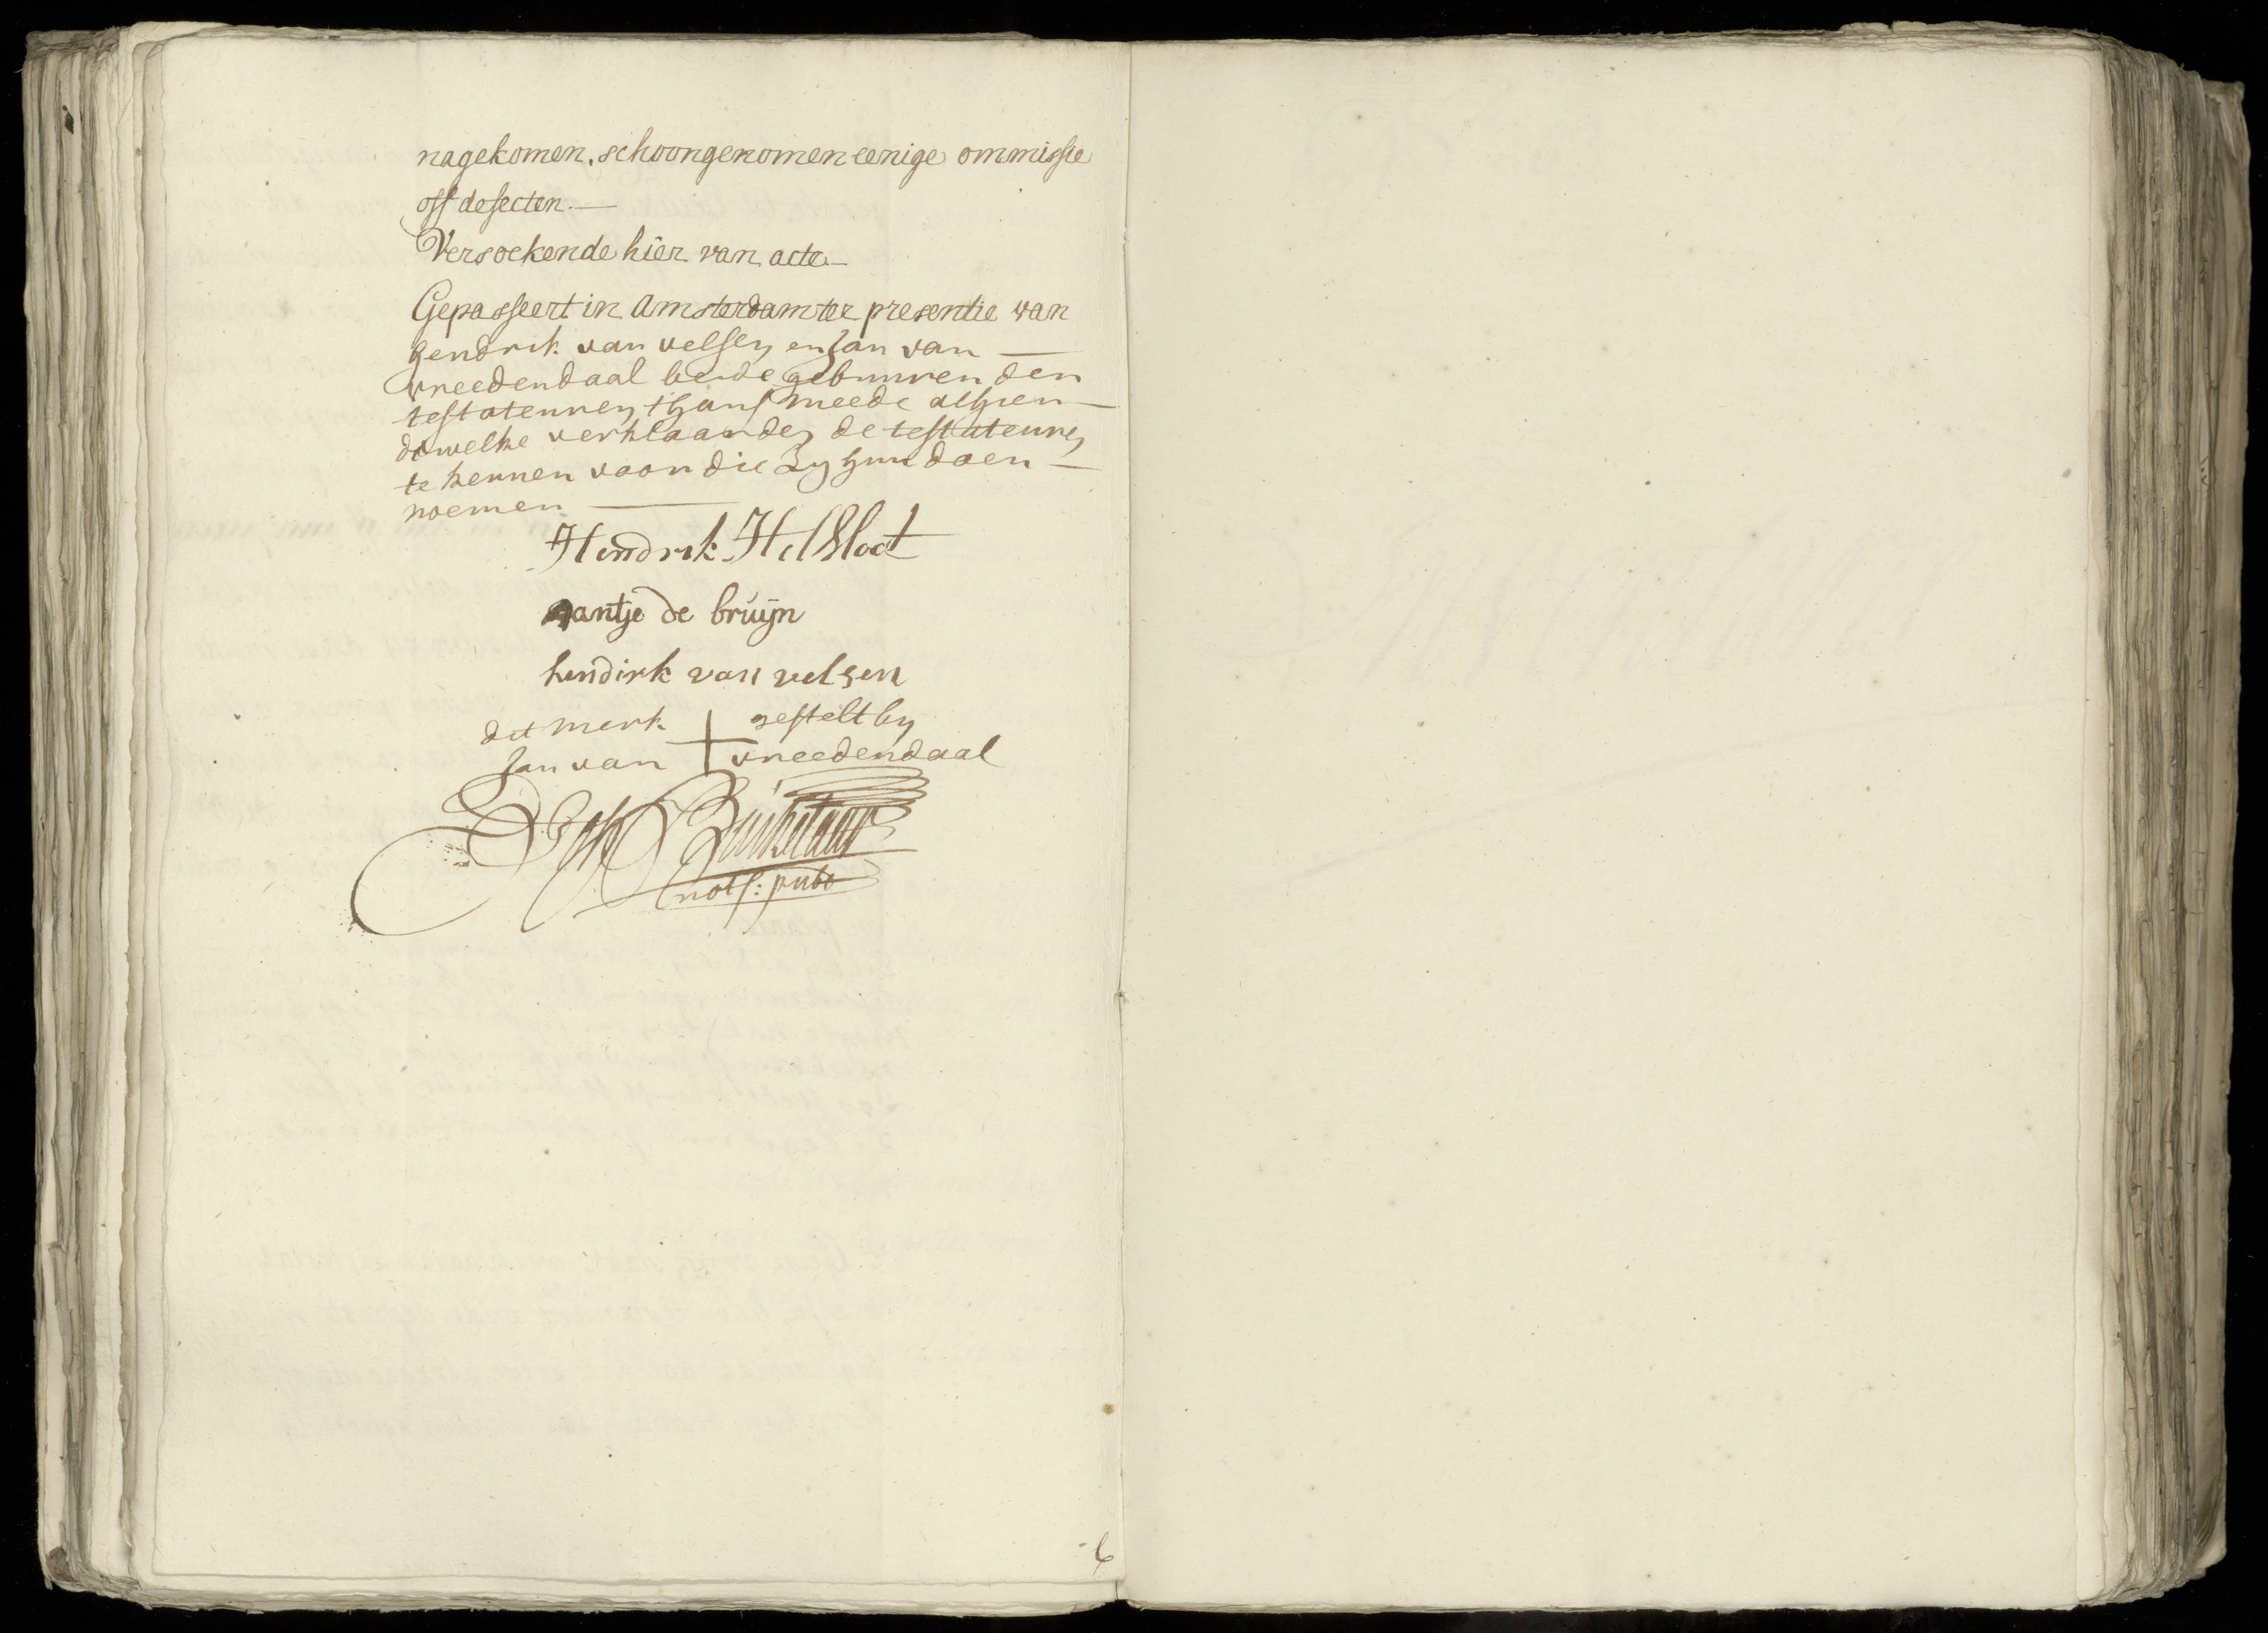 Hendricus Helsloot 1736 x Anna de Bruijn testament 1763 IV